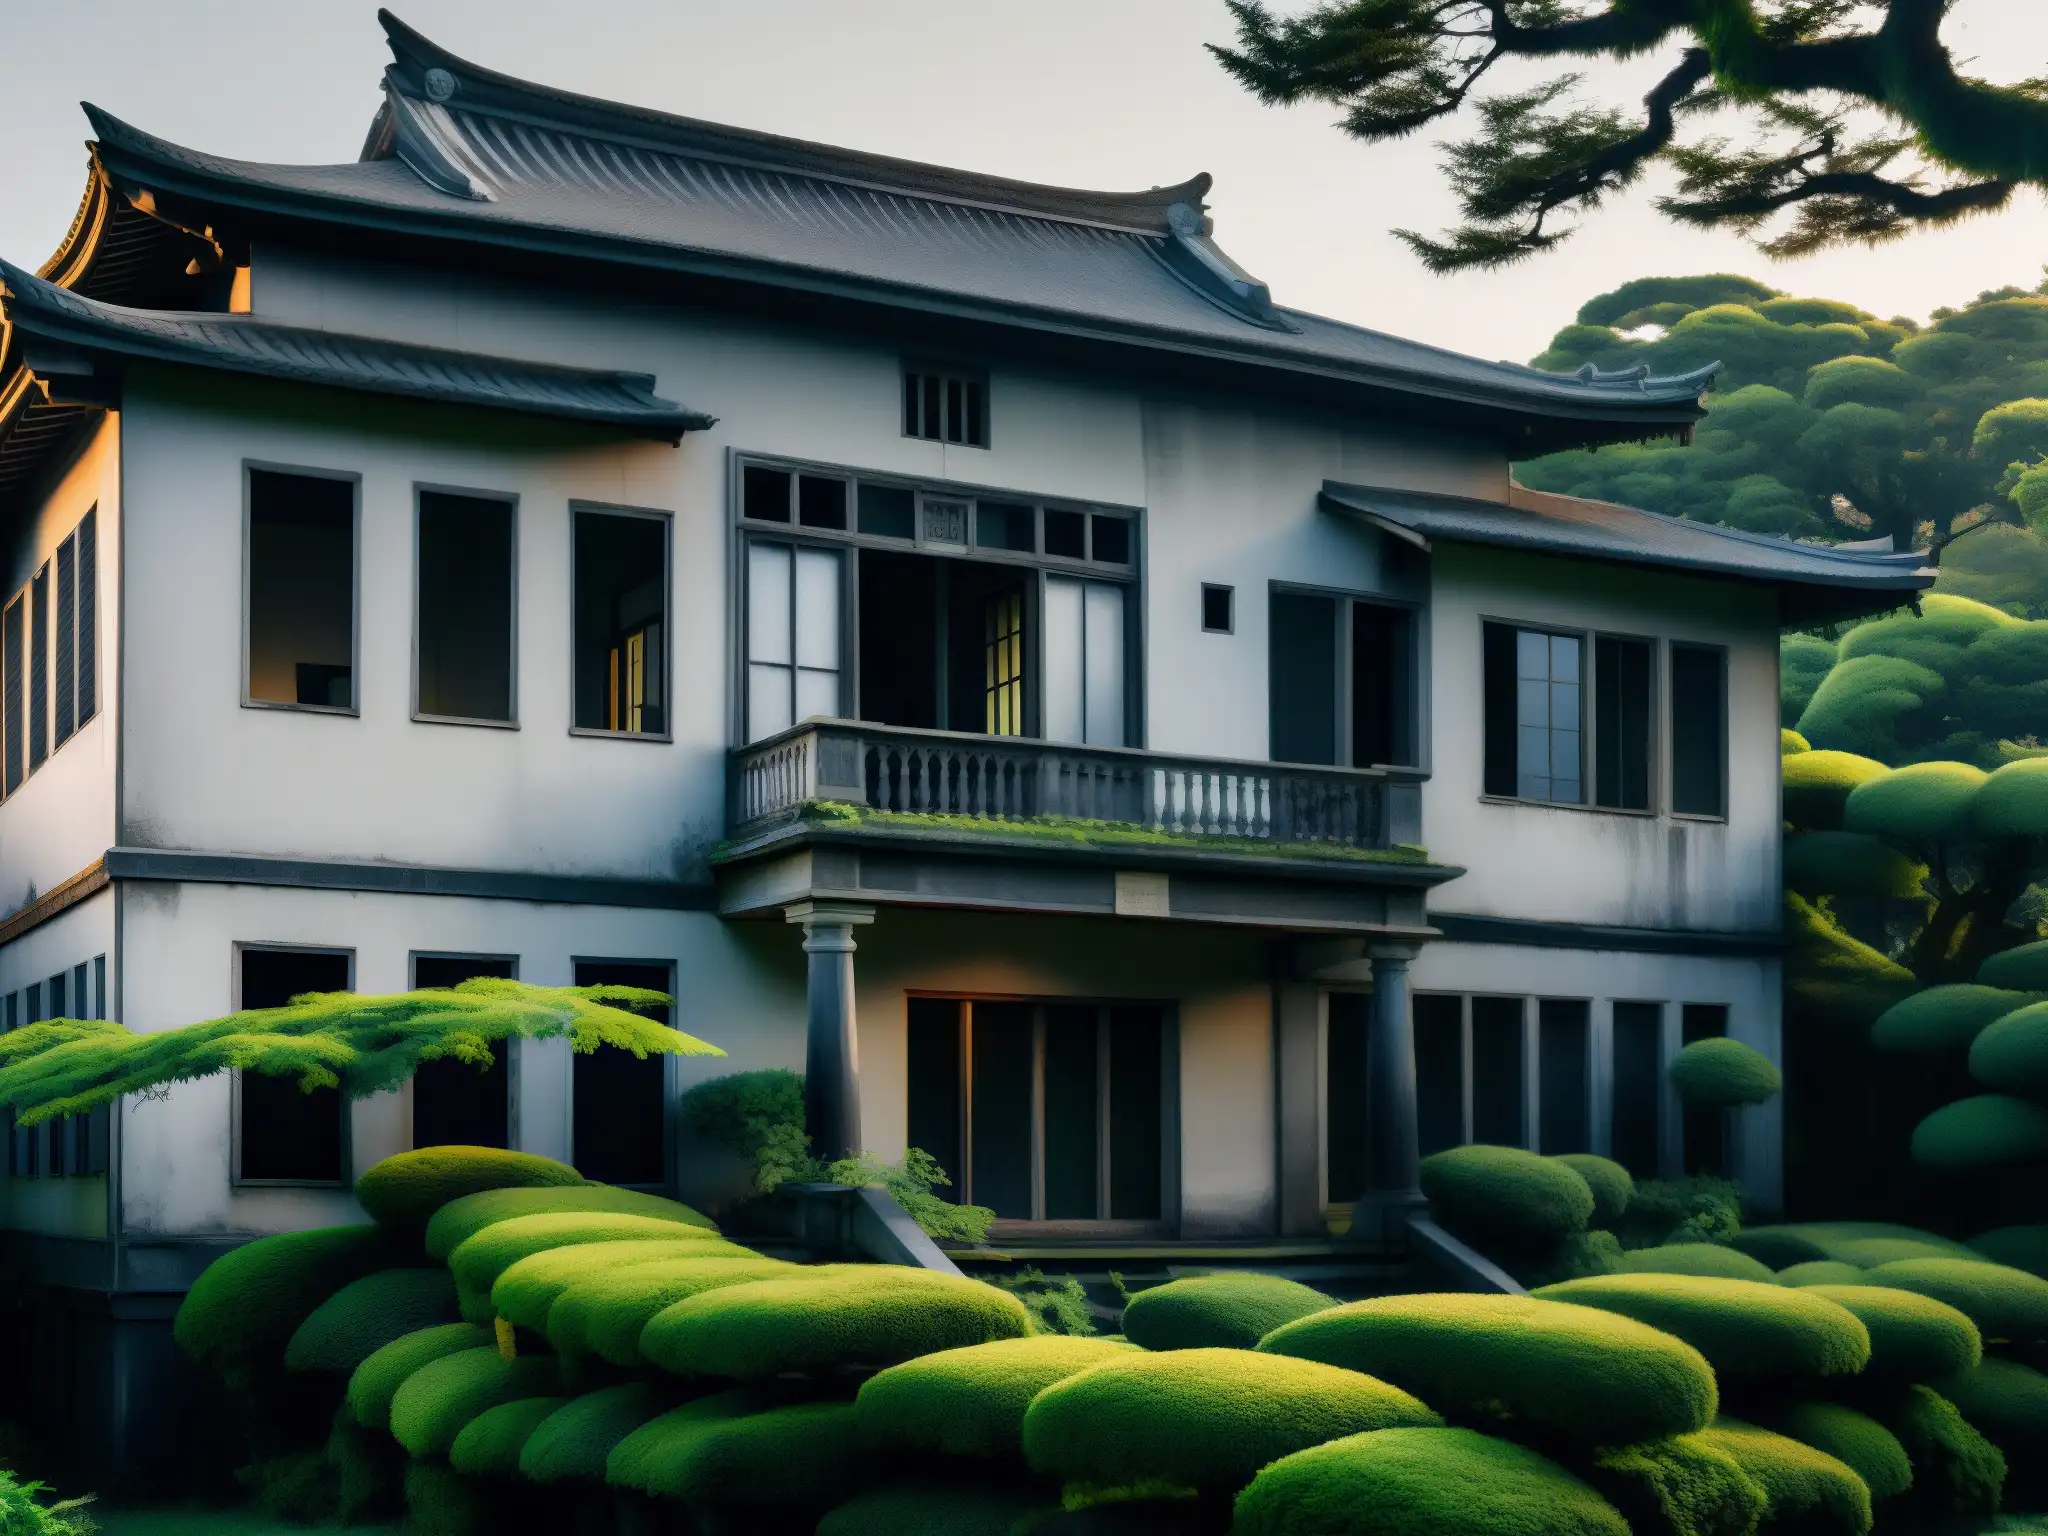 Una mansión japonesa abandonada al atardecer, con maleza y una atmósfera inquietante